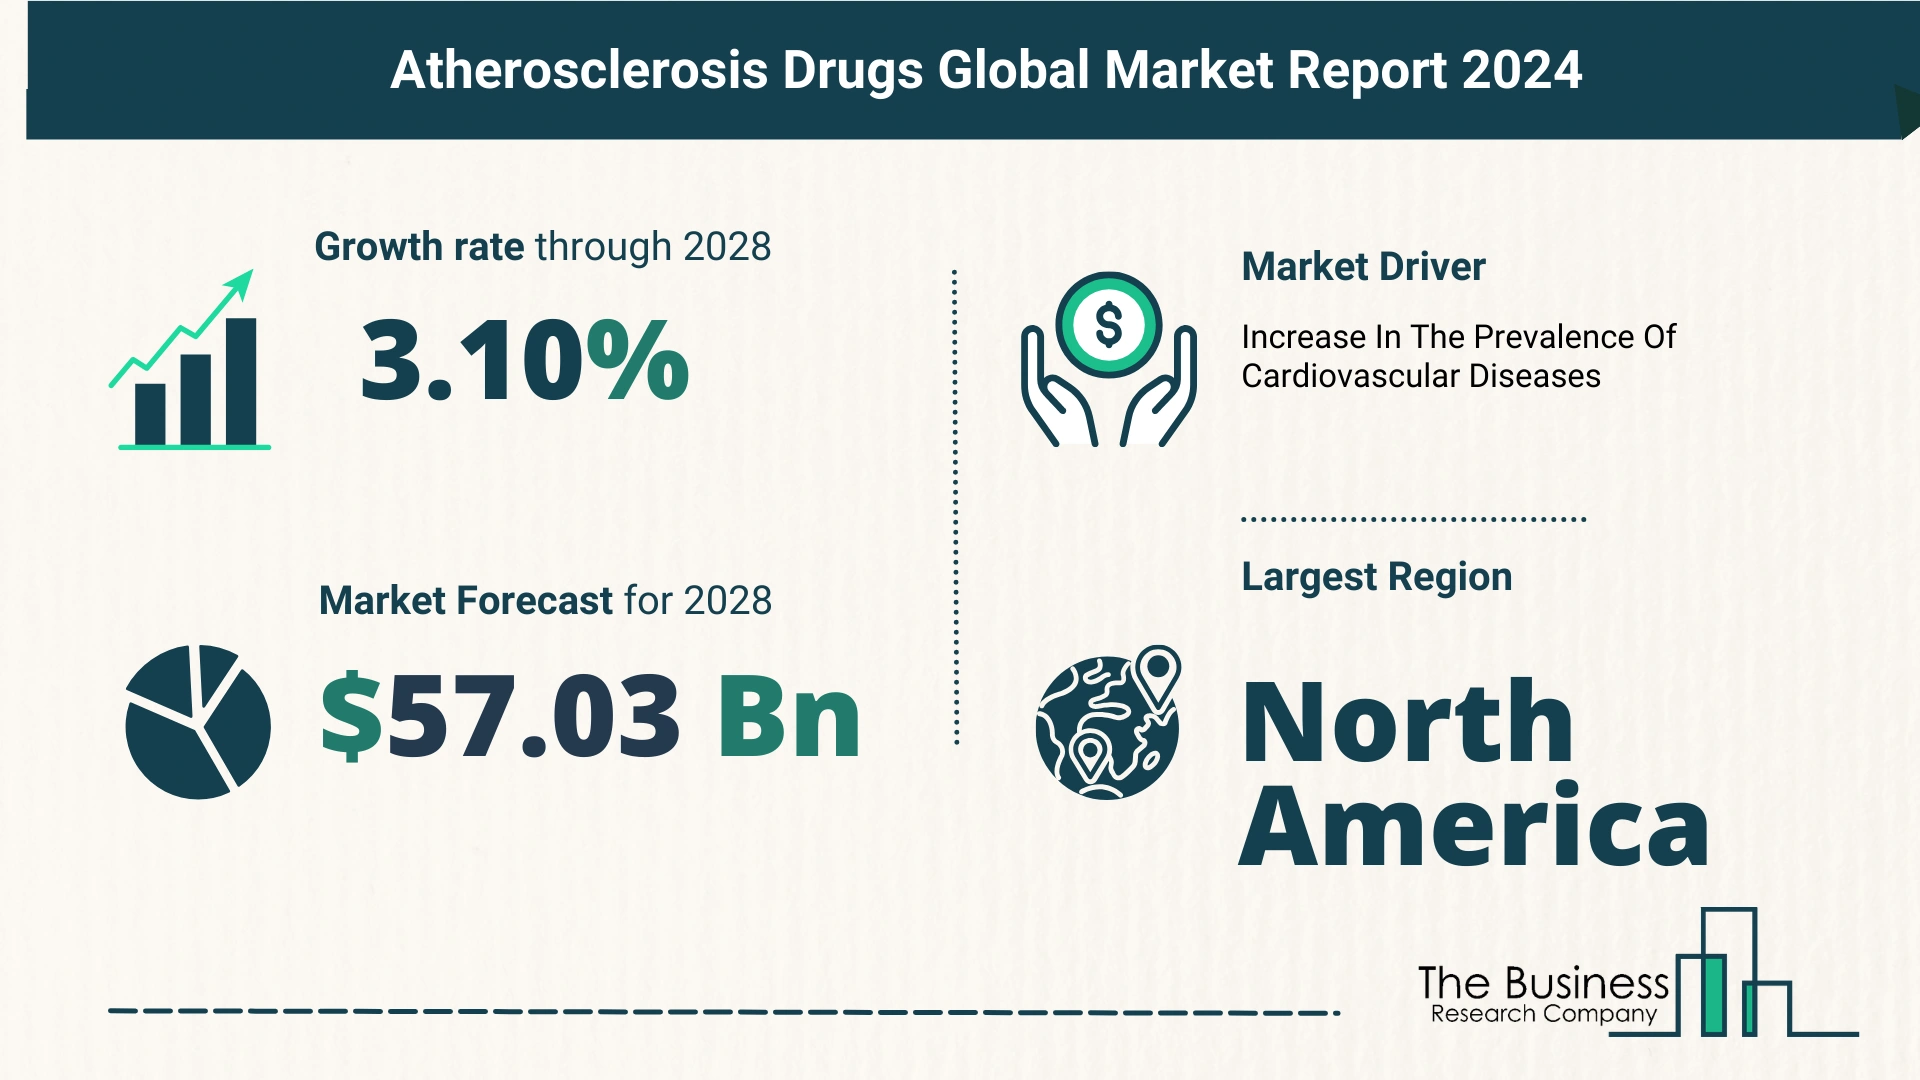 Global Atherosclerosis Drugs Market Size